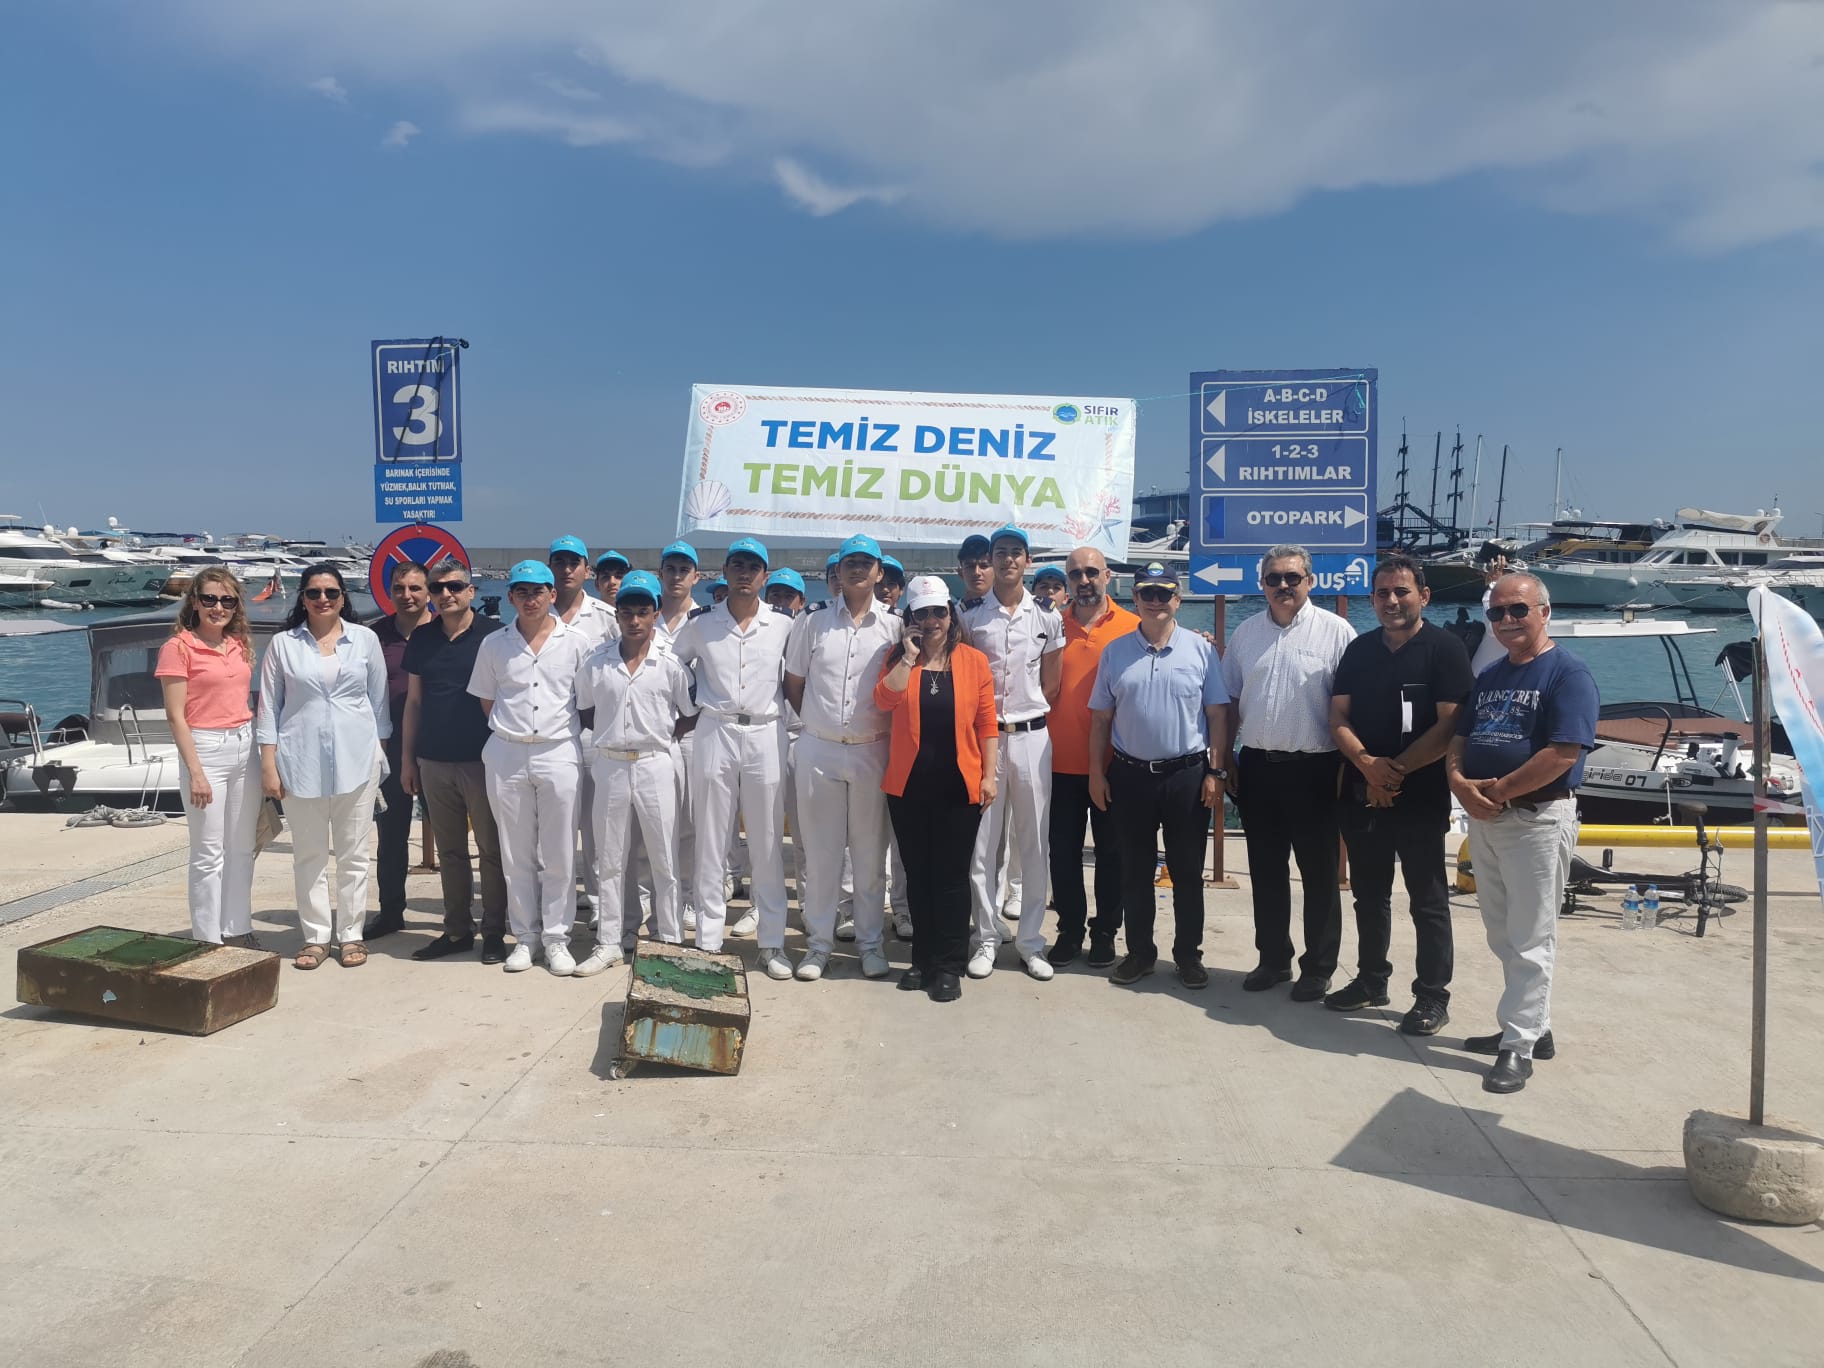 Türkiye Çevre Haftası etkinlikleri kapsamında 9 Haziran tarihinde, Balıkçı Barınağında çevre etkinliği ,Nadire Konuk ve Ali Oğuz Konuk Ortaokulu öğrencilerinin “Geçmişi Tanıyorum Gelecek İçin Üretiyorum” konulu sergiye katılım sağlandı.